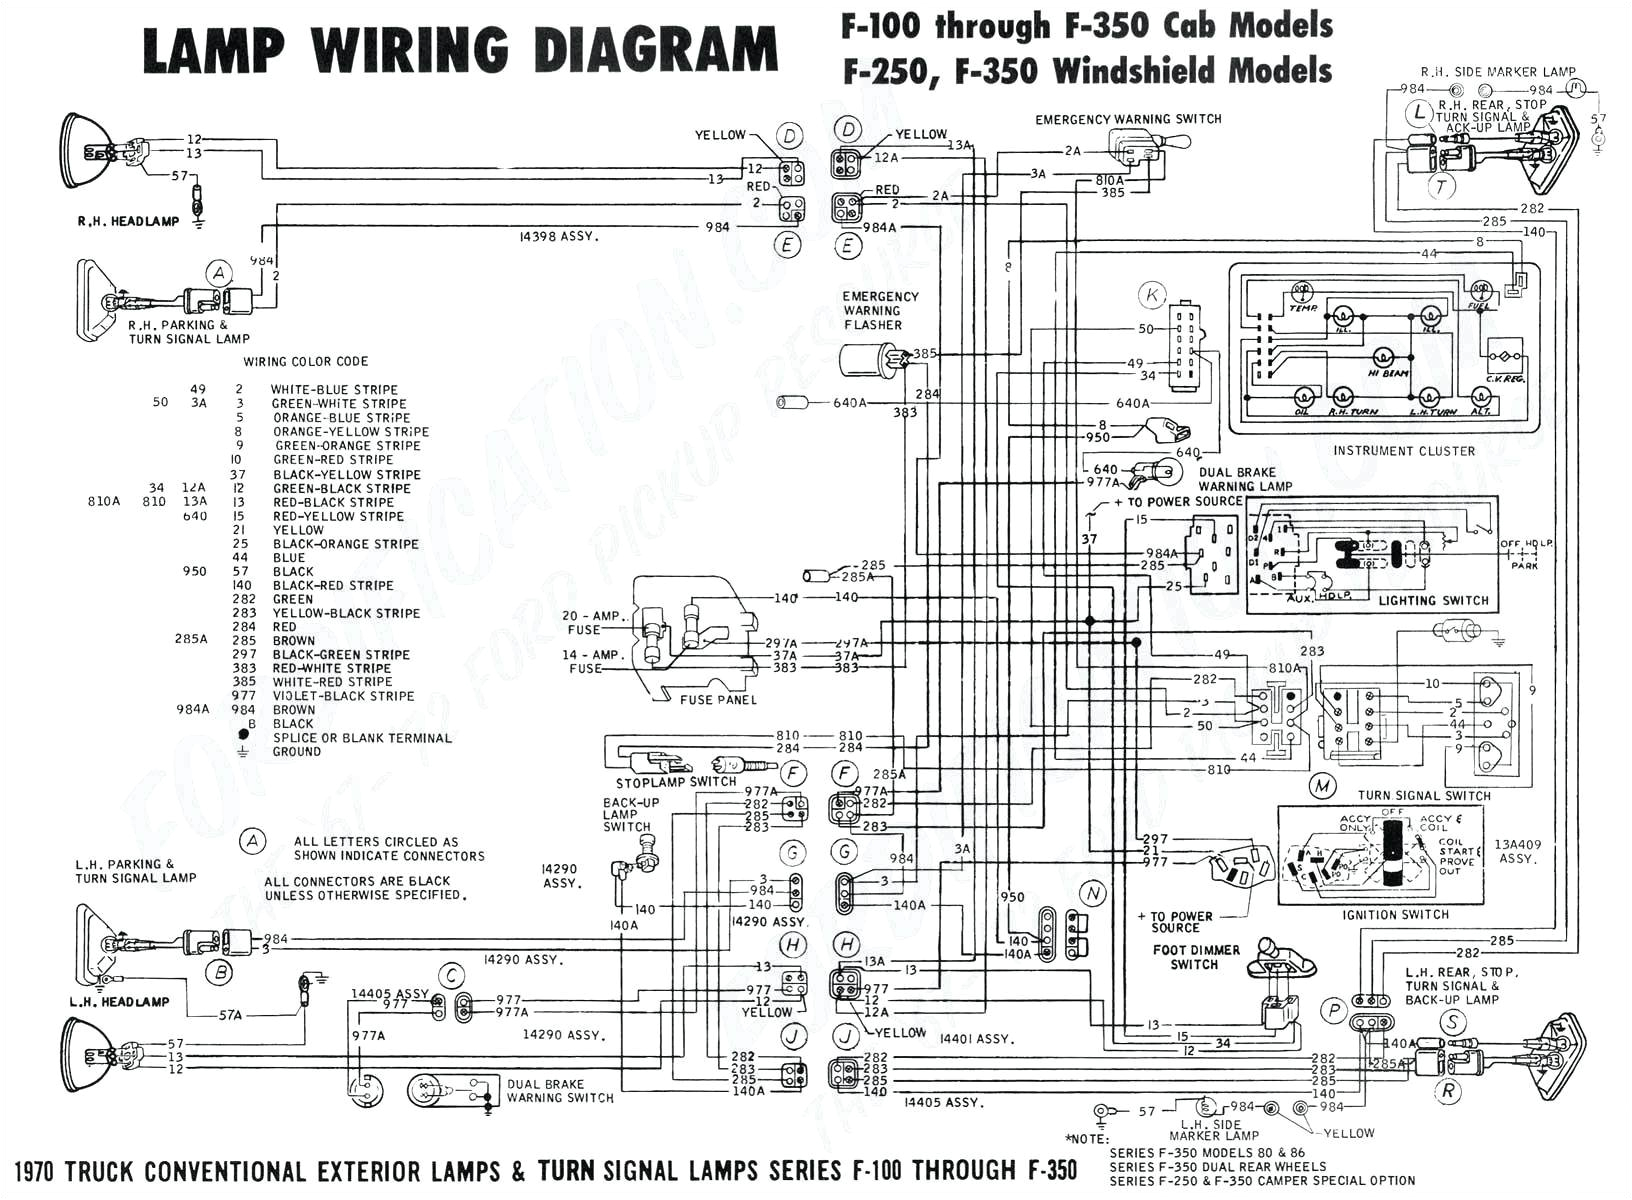 1969 chevelle tach wiring diagram wiring diagram 1970 dodge challenger tach wiring